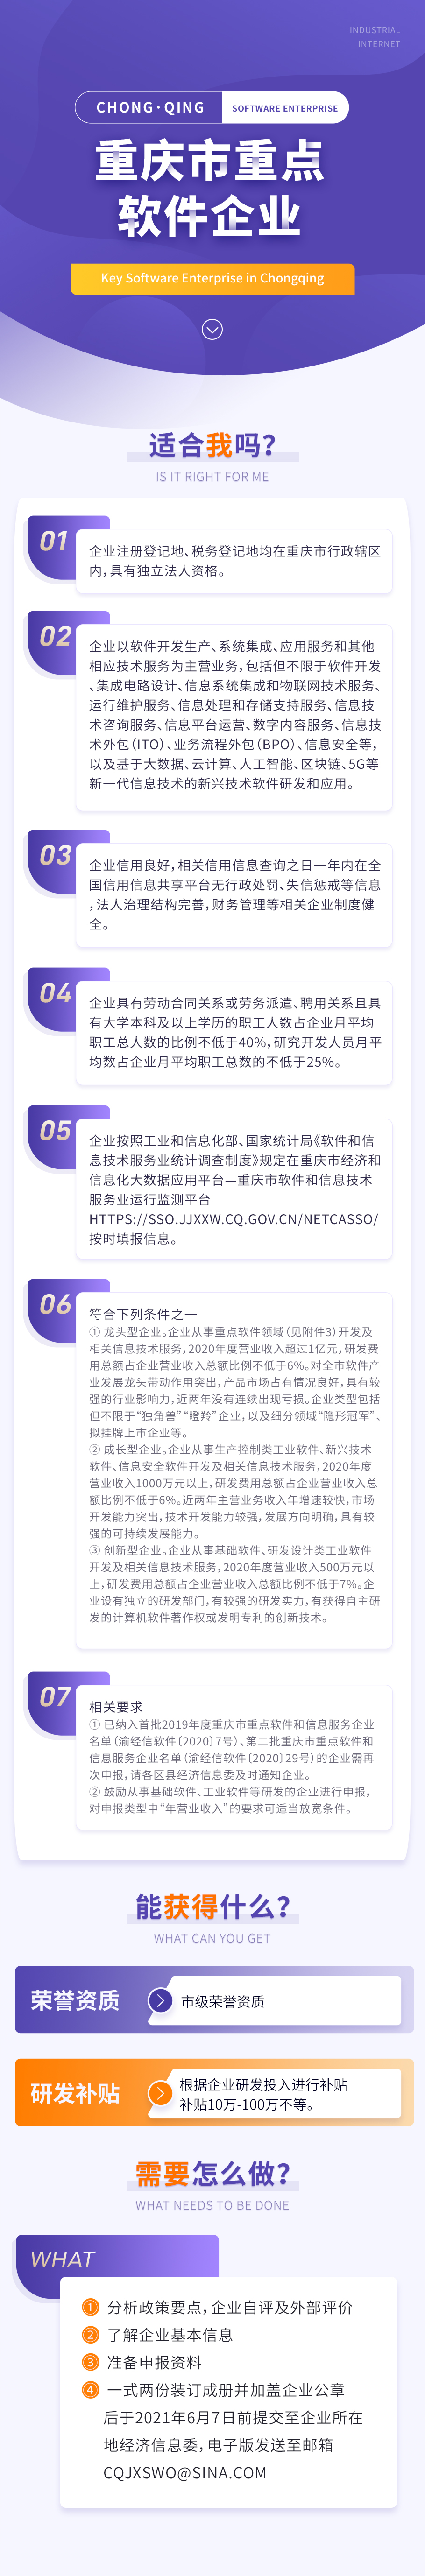 10-重庆市重点软件企业web.jpg